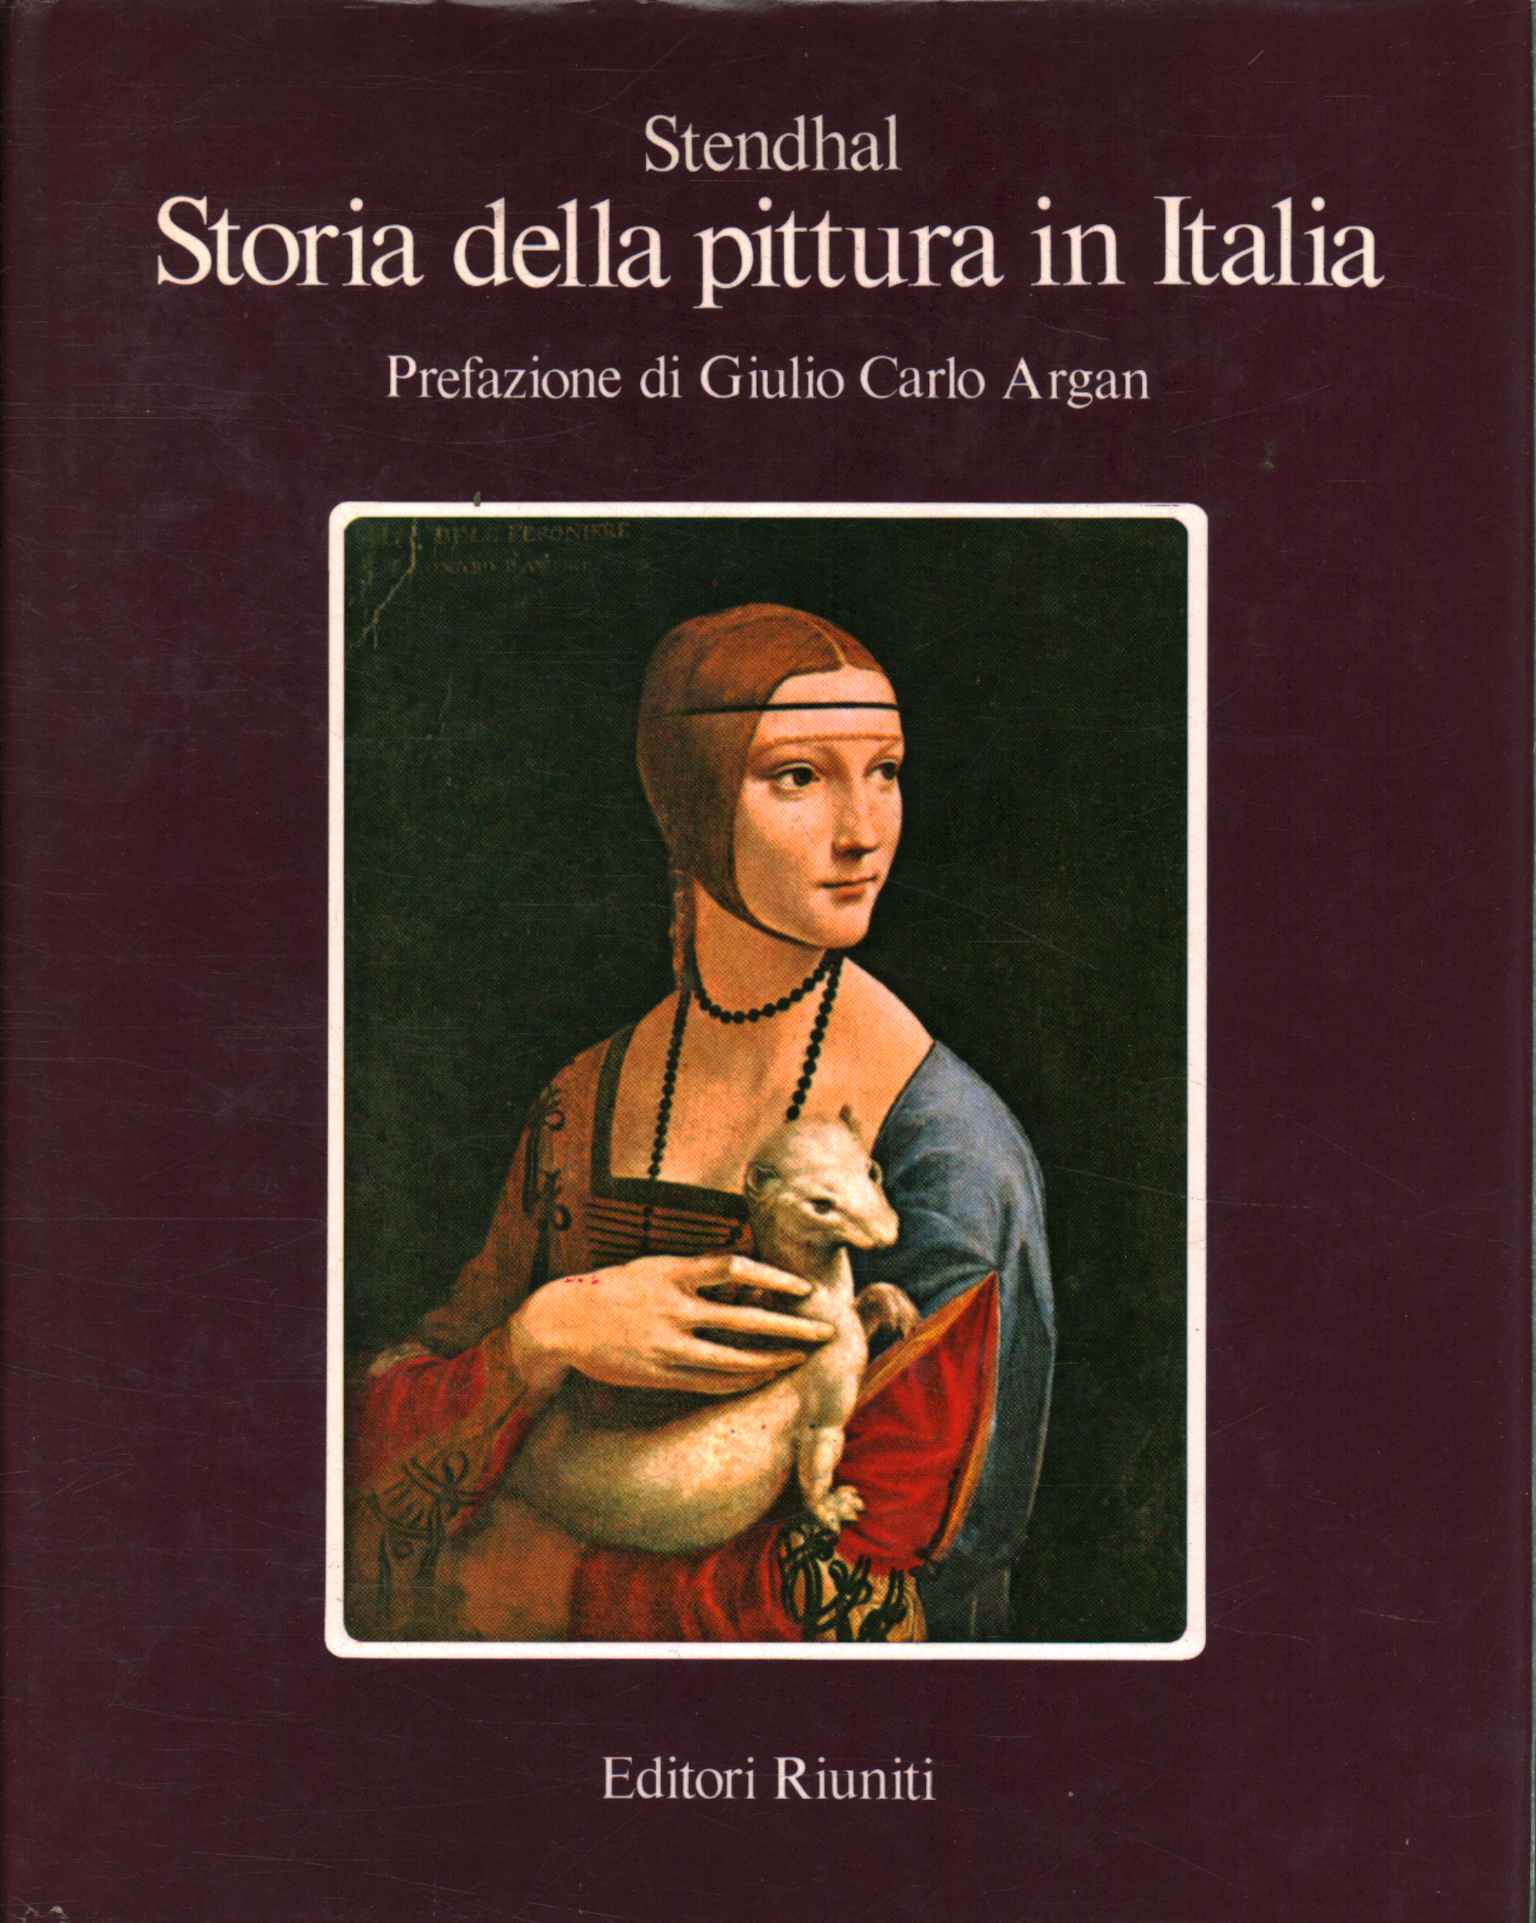 Geschichte der Malerei in Italien